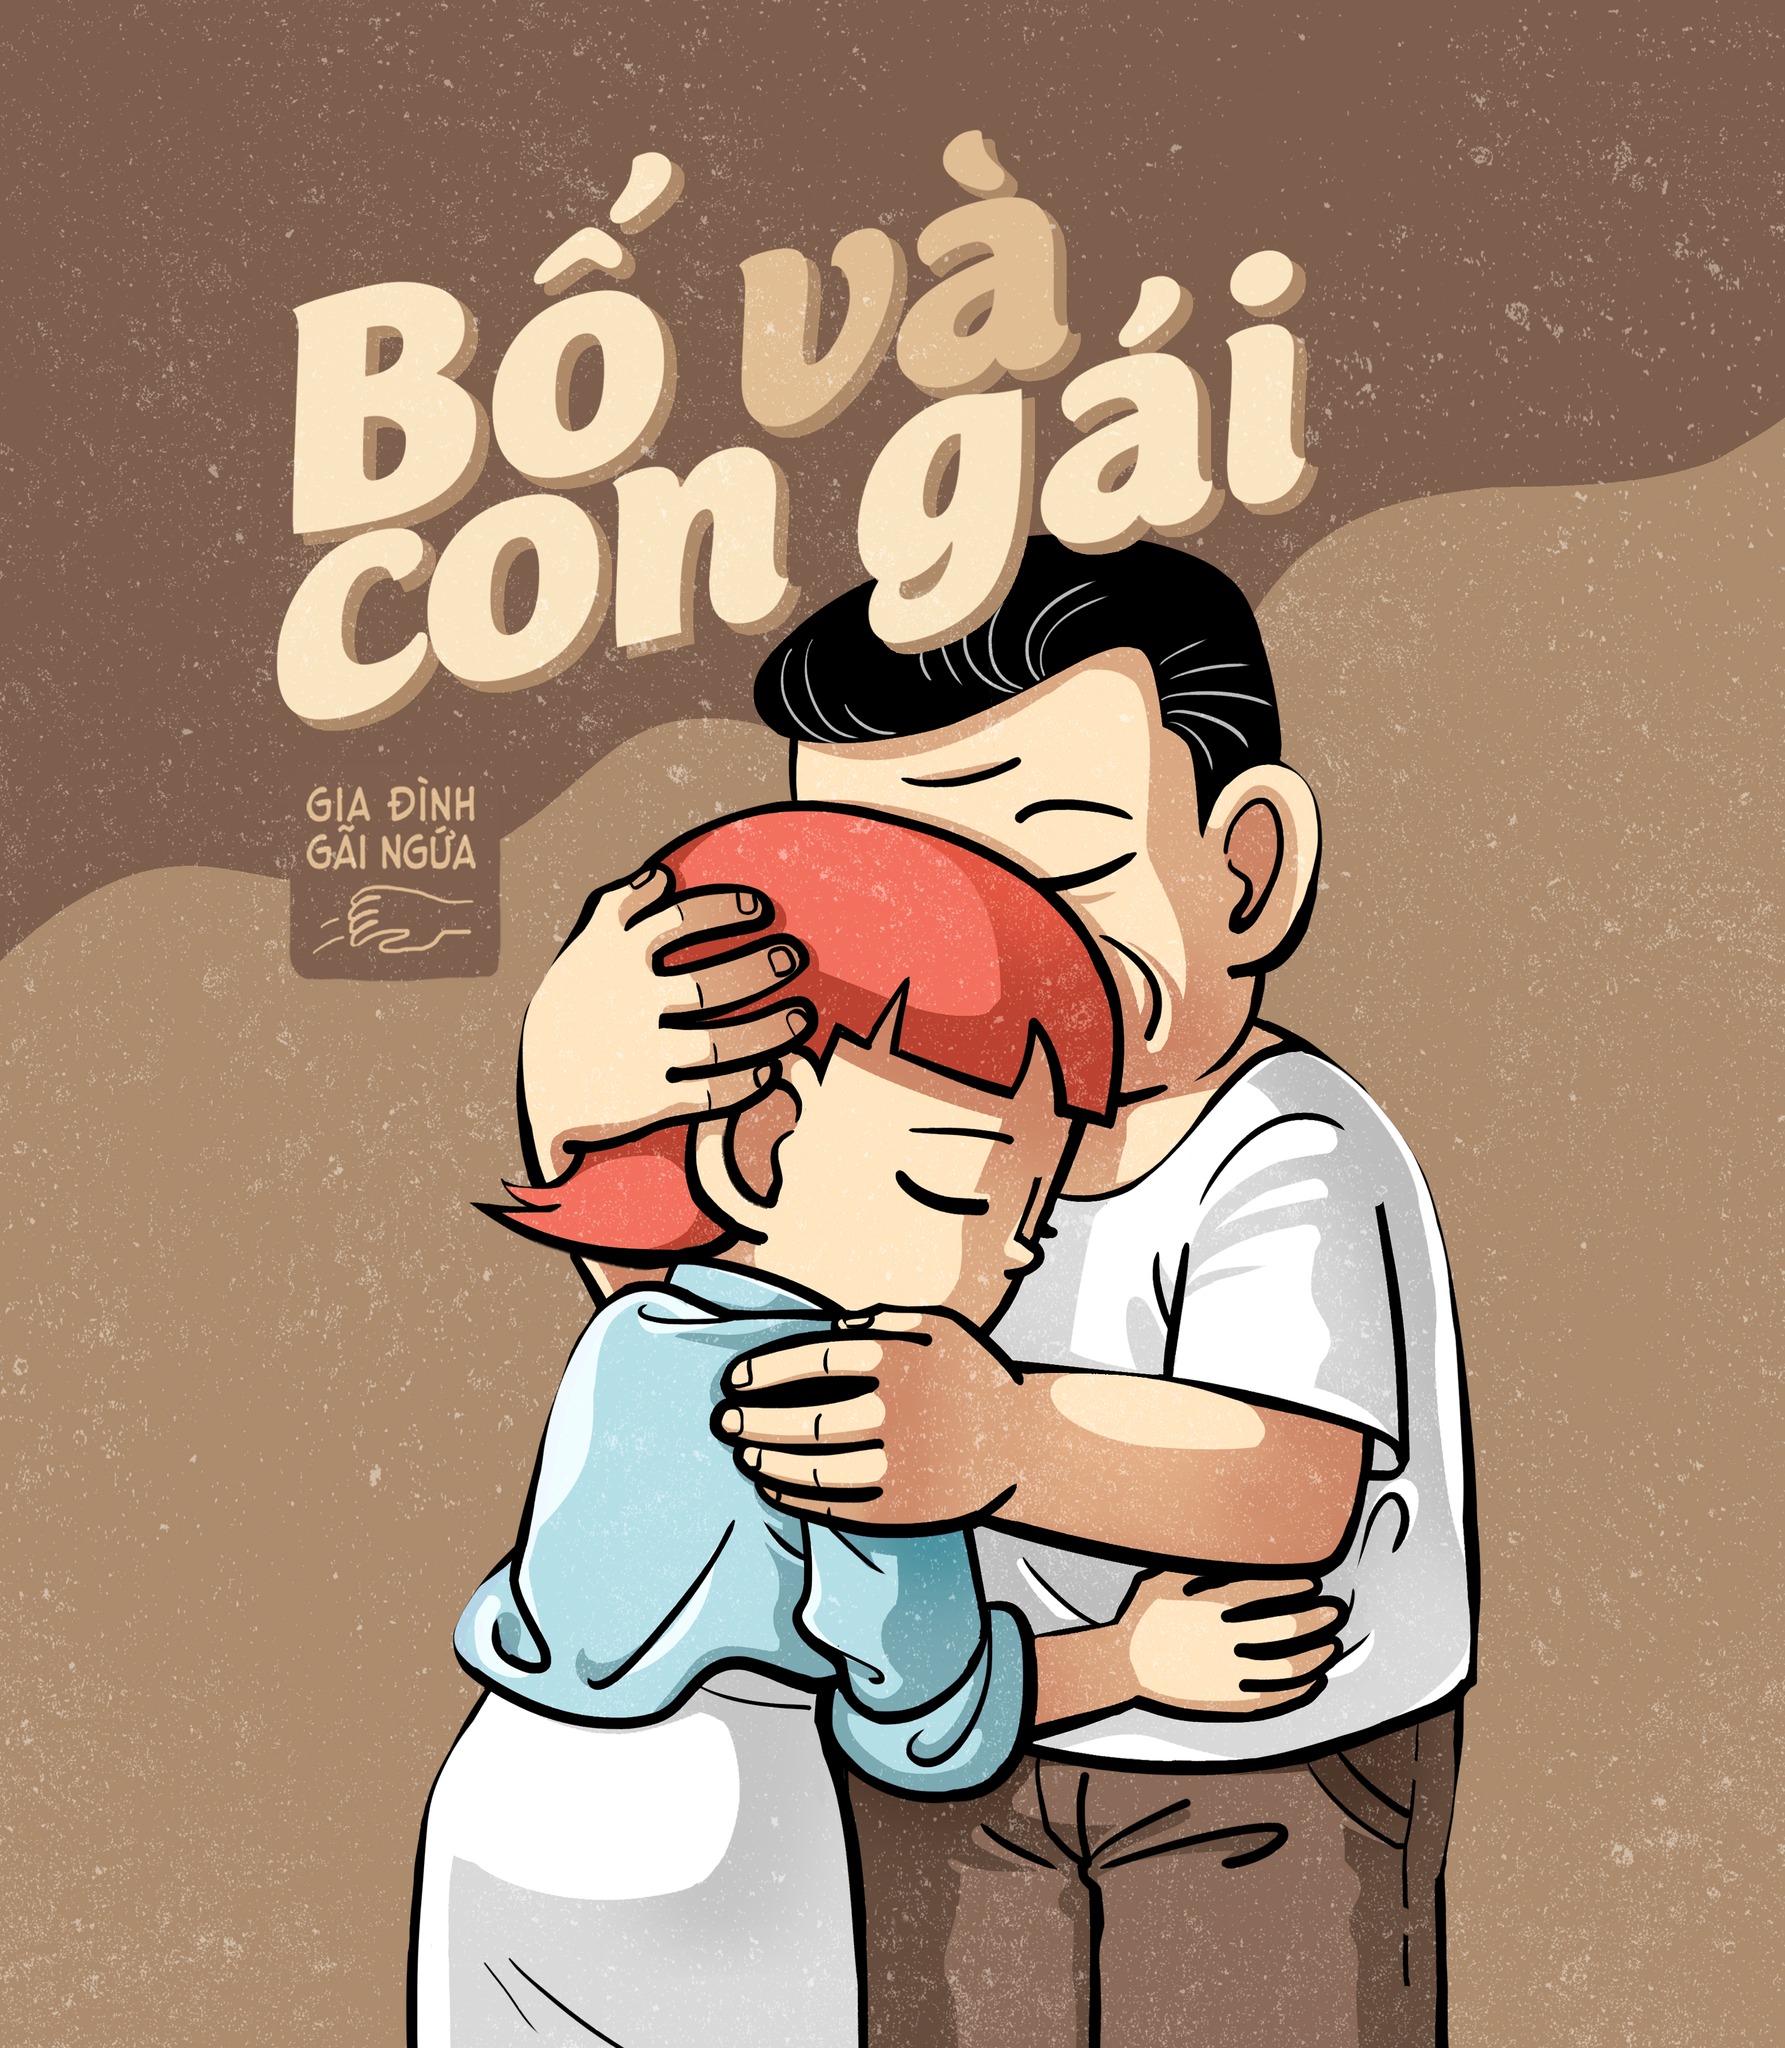 “Bố và con gái”: Bộ truyện tranh về tình cảm gia đình khiến cộng đồng mạng xúc động - Ảnh 1.